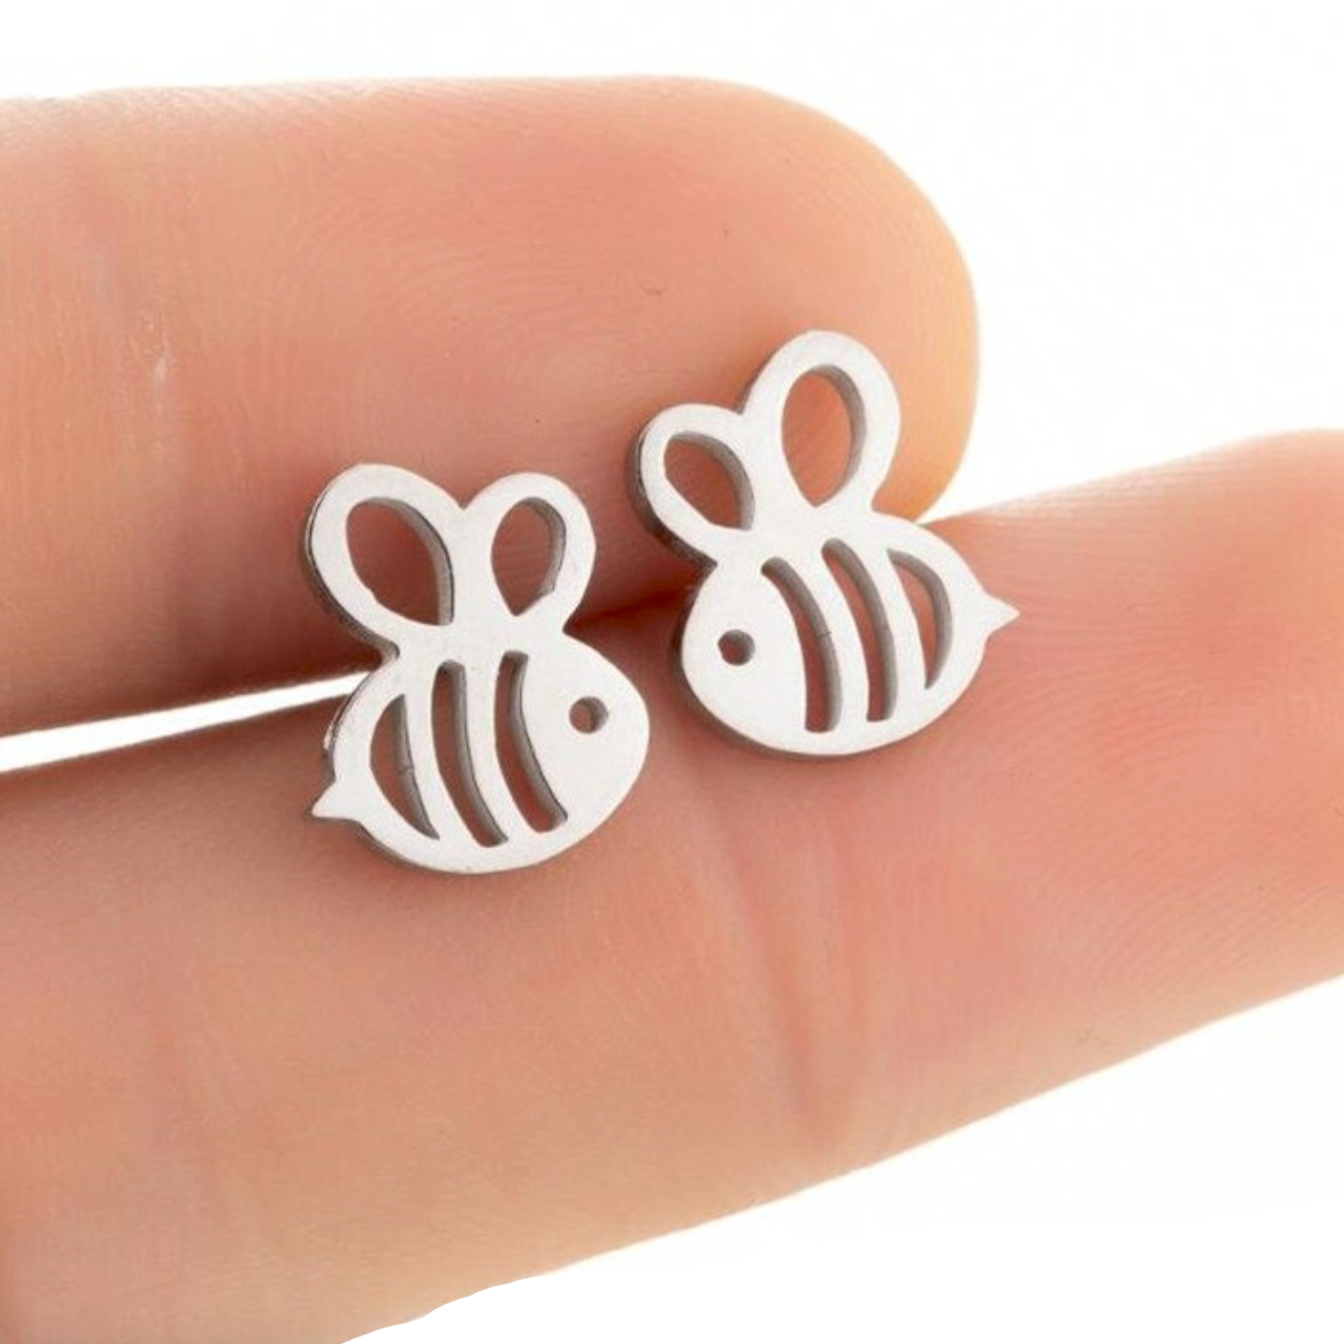 Boucles d'oreilles acier argent petites abeilles. Détails produit : Couleur argent. Acier inoxydable argenté. Petites abeilles argentées. Dimensions 1 cm x 1 cm.  Version couleur or